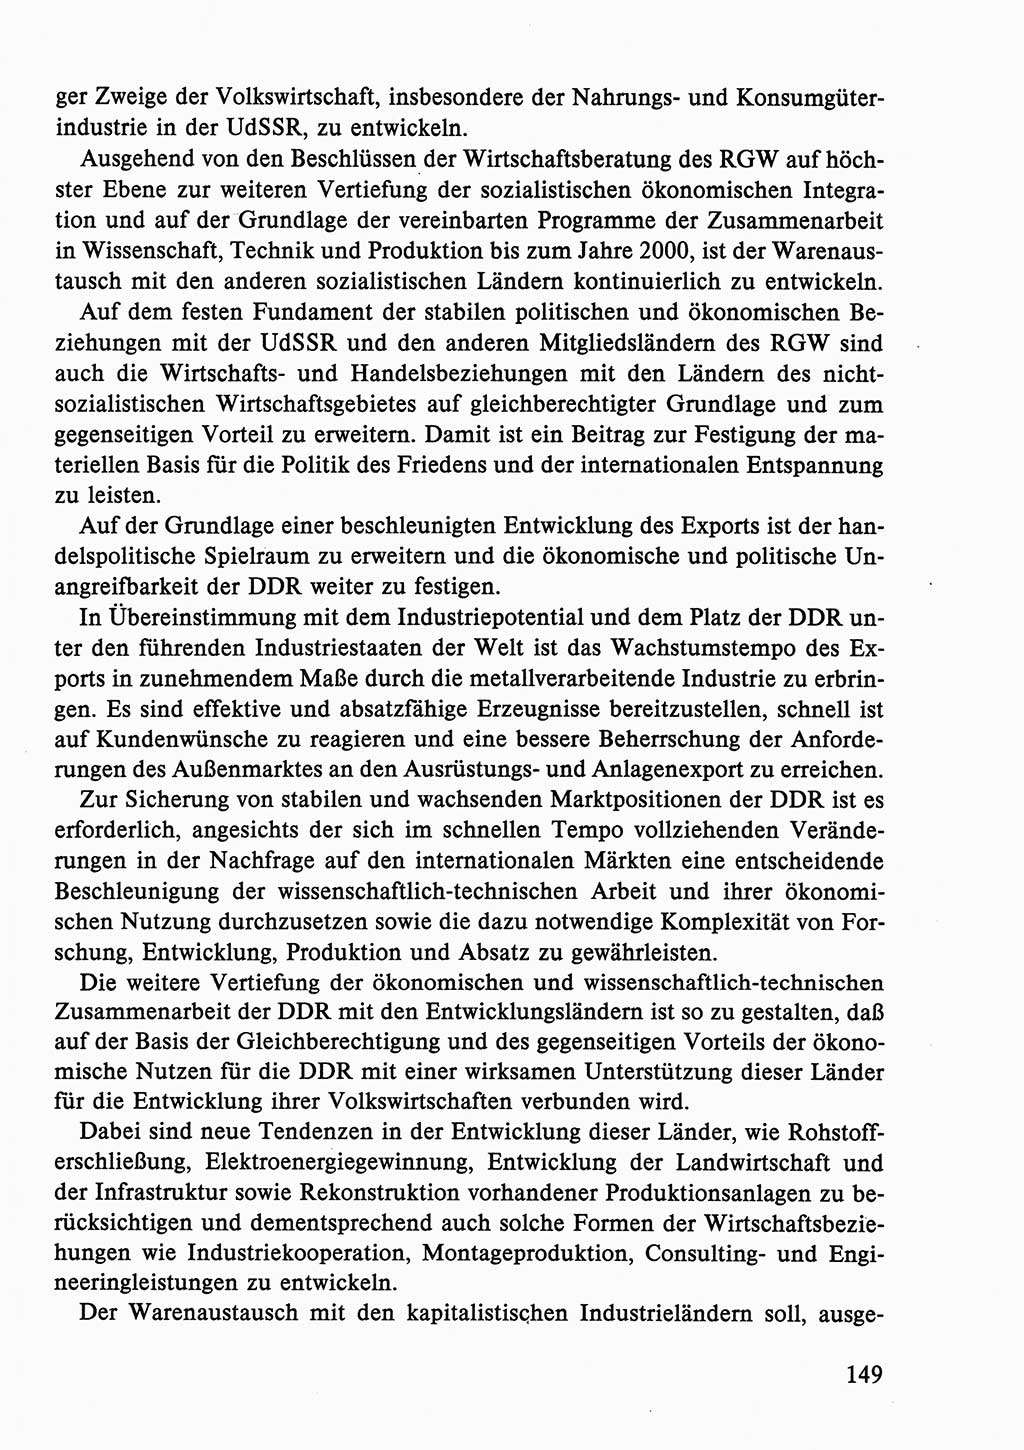 Dokumente der Sozialistischen Einheitspartei Deutschlands (SED) [Deutsche Demokratische Republik (DDR)] 1986-1987, Seite 149 (Dok. SED DDR 1986-1987, S. 149)